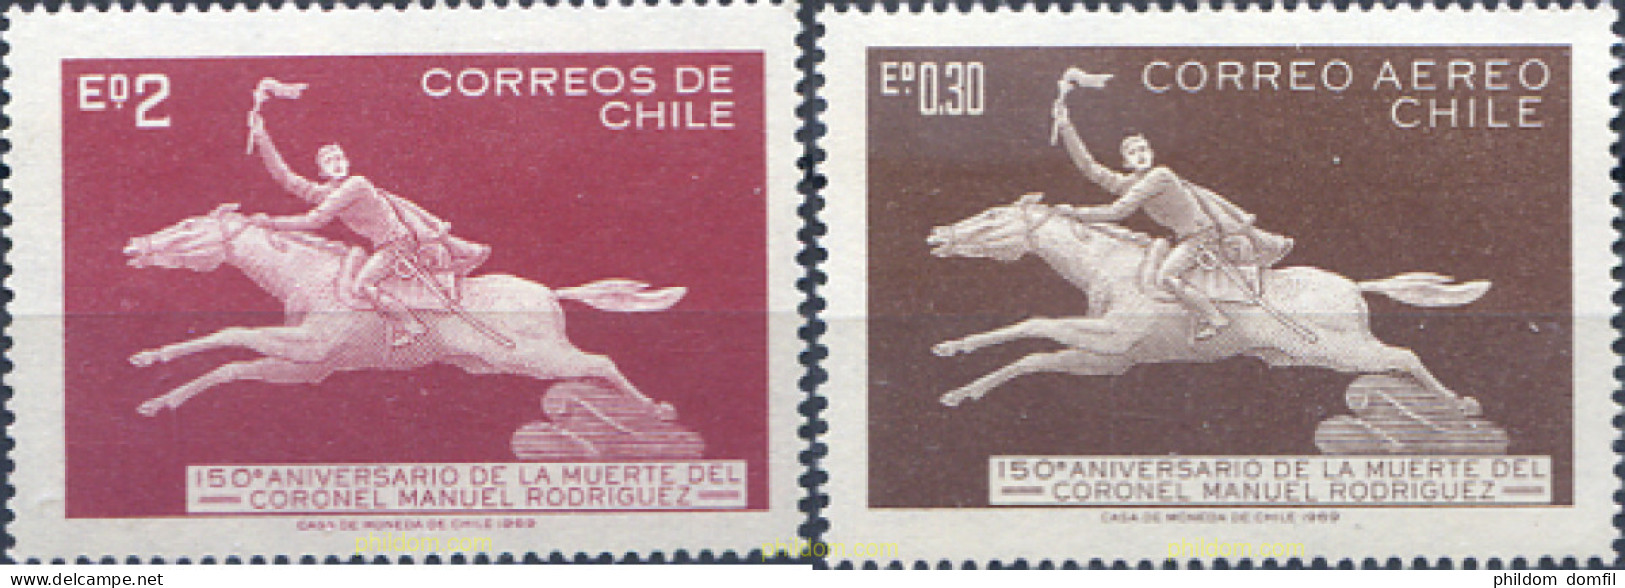 303275 MNH CHILE 1969 150 ANIVERSARIO DE LA MUERTE DEL CORONEL MANUEL RODRIGUEZ - Chile